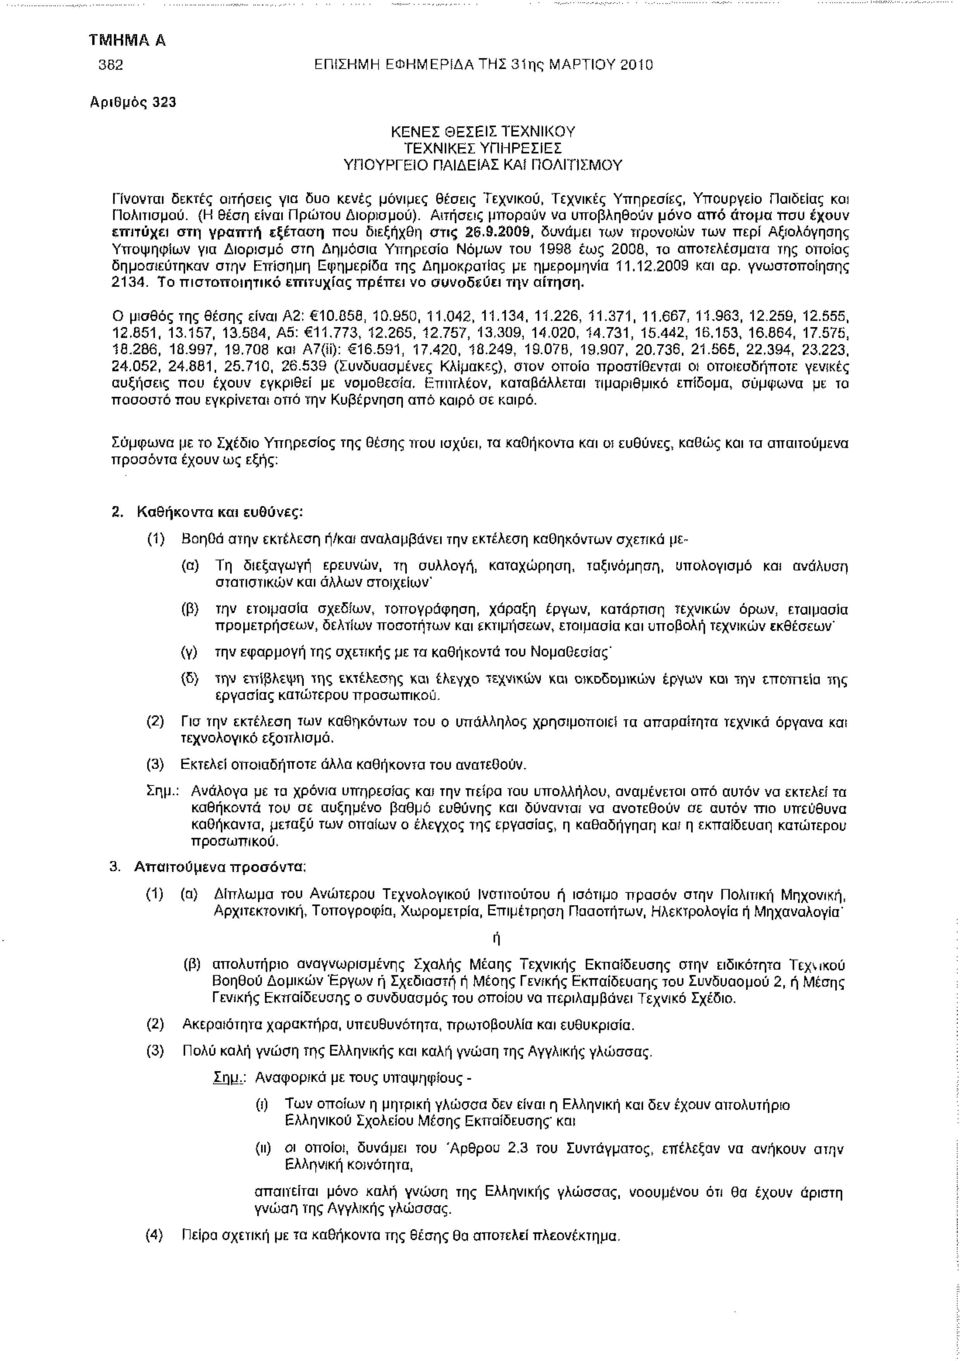 2009, δυνάμει των προνοιών των περί Αξιολόγησης Υποψηφίων για Διορισμό στη Δημόσια Υπηρεσία Νόμων του 1998 έως 2008, τα αποτελέσματα της οποίας δημοσιεύτηκαν στην Επίσημη Εφημερίδα της Δημοκρατίας με